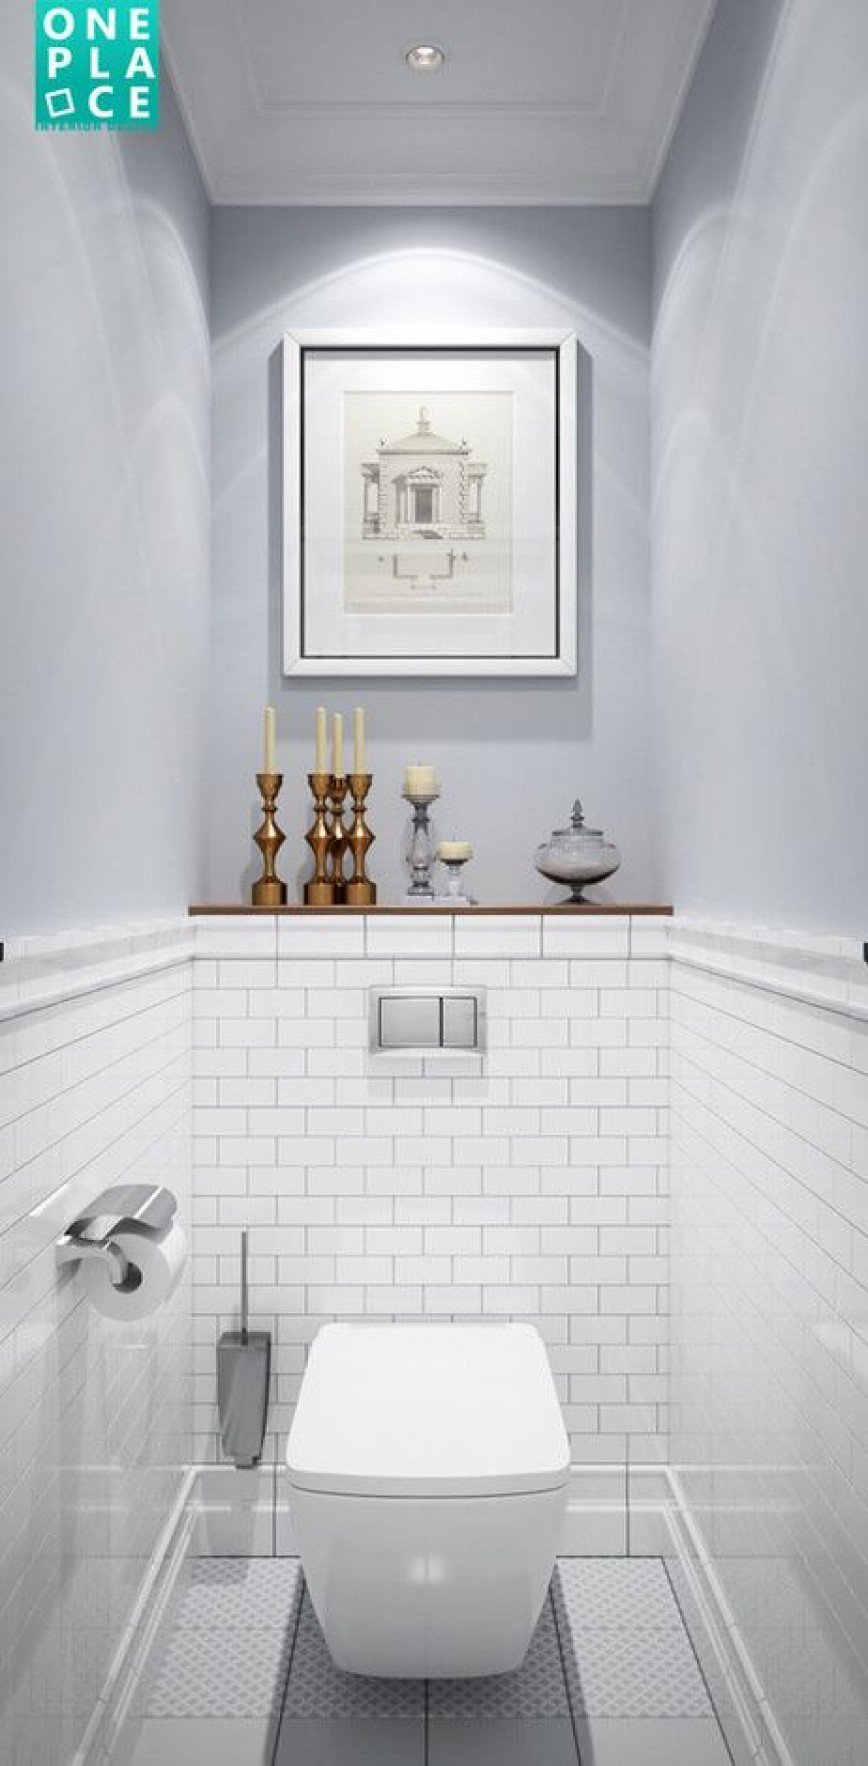 плитка в туалете не до потолка дизайн